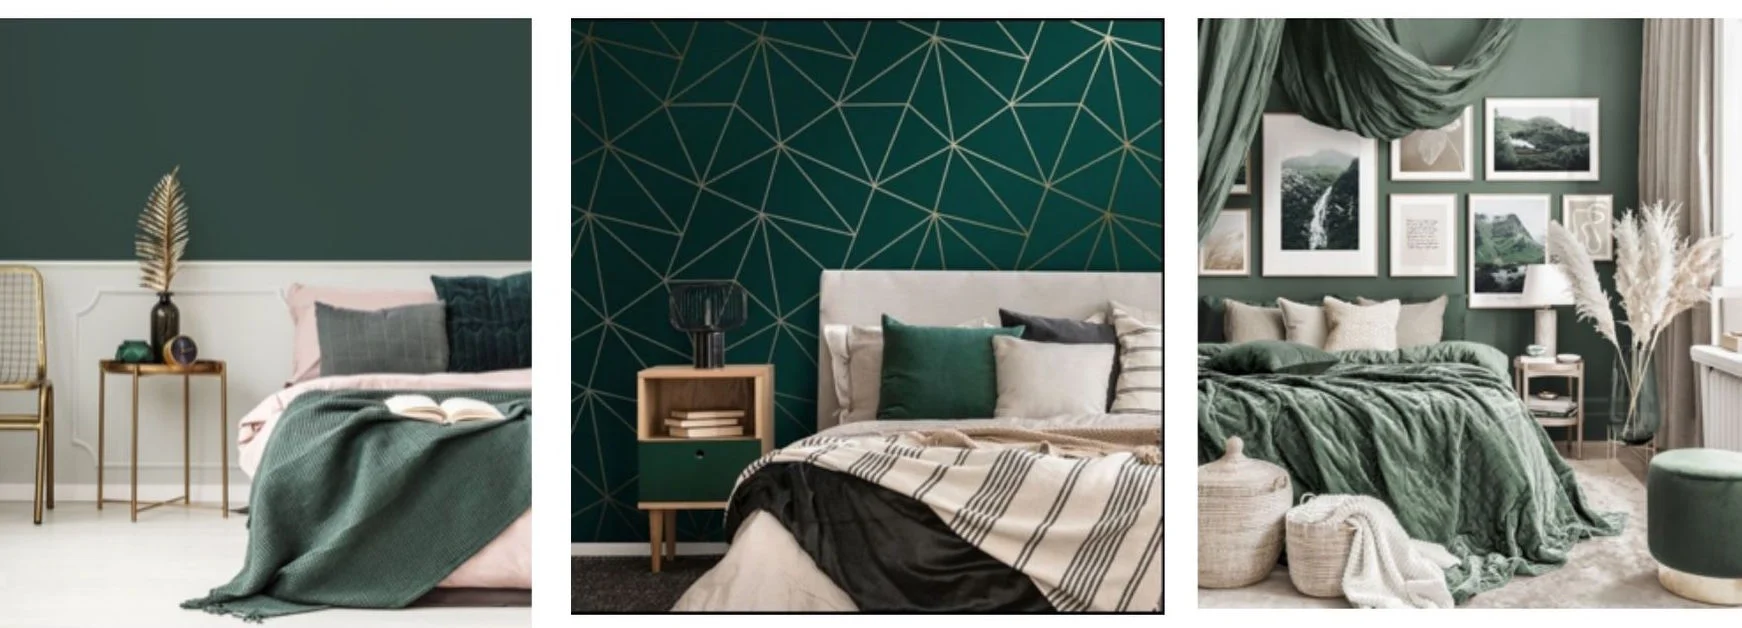 Camera da letto verde - un interno rilassante